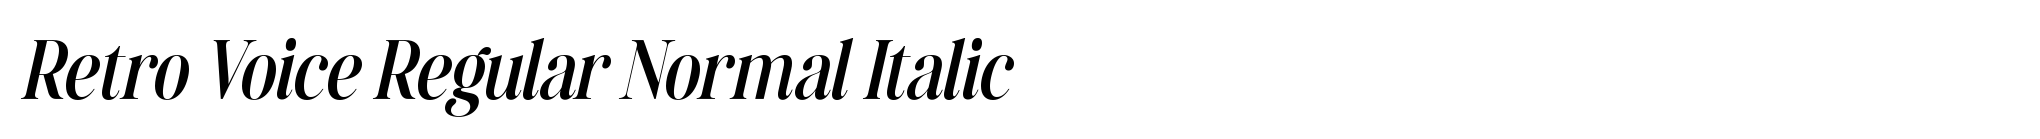 Retro Voice Regular Normal Italic image